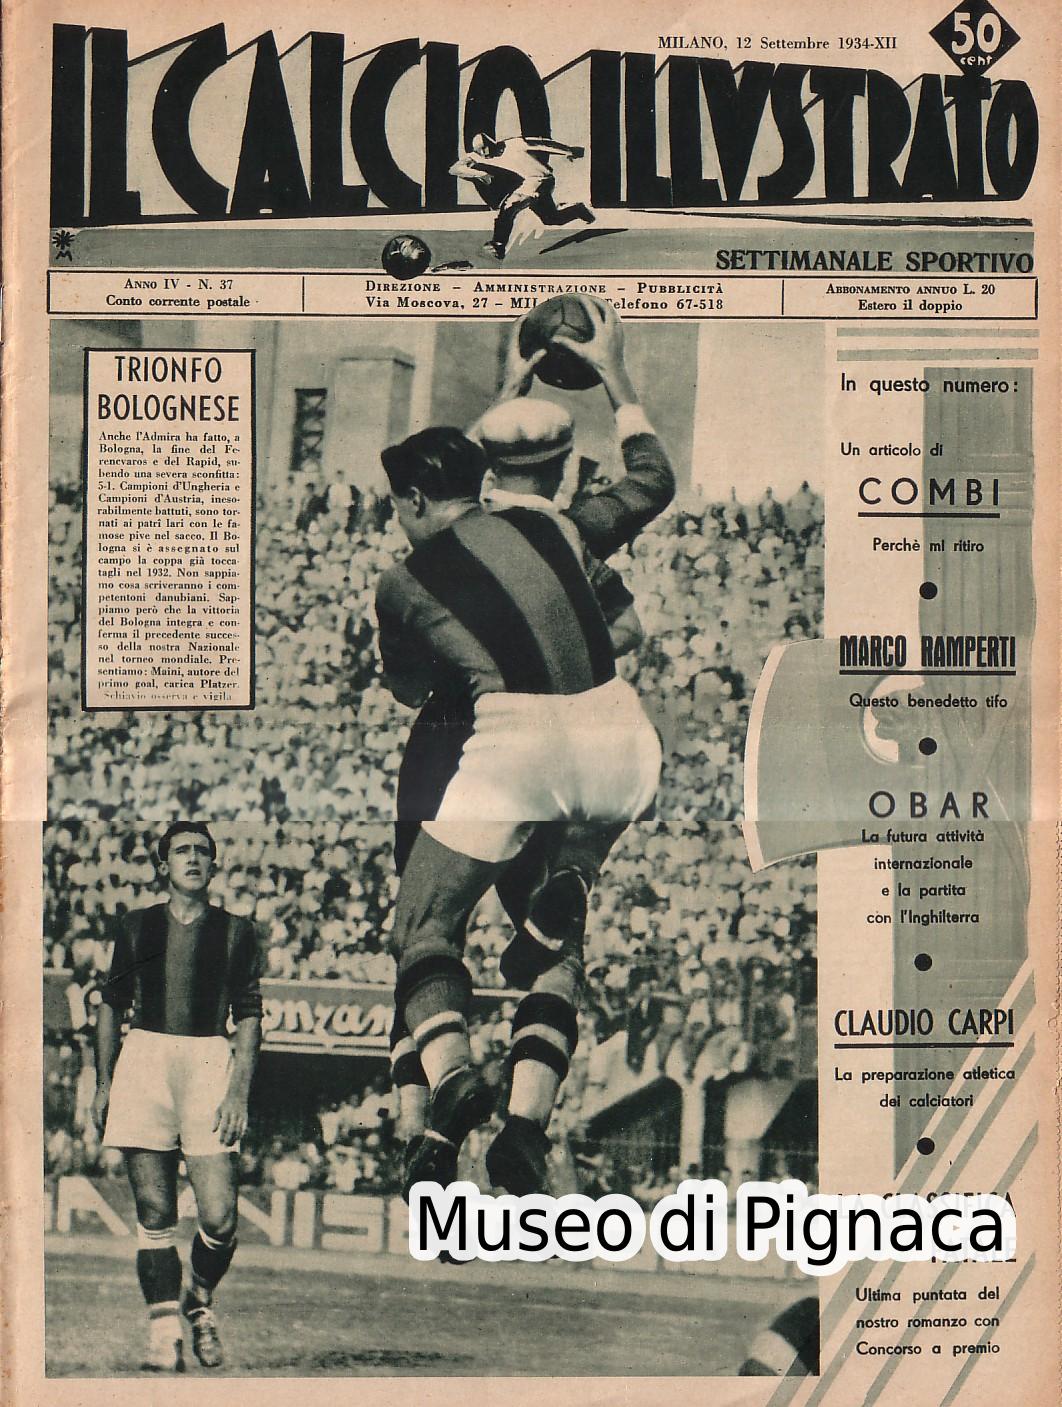 1934 (12 settembre) - Il Calcio Illustrato - Trionfo Bolognese (Coppa Europa)